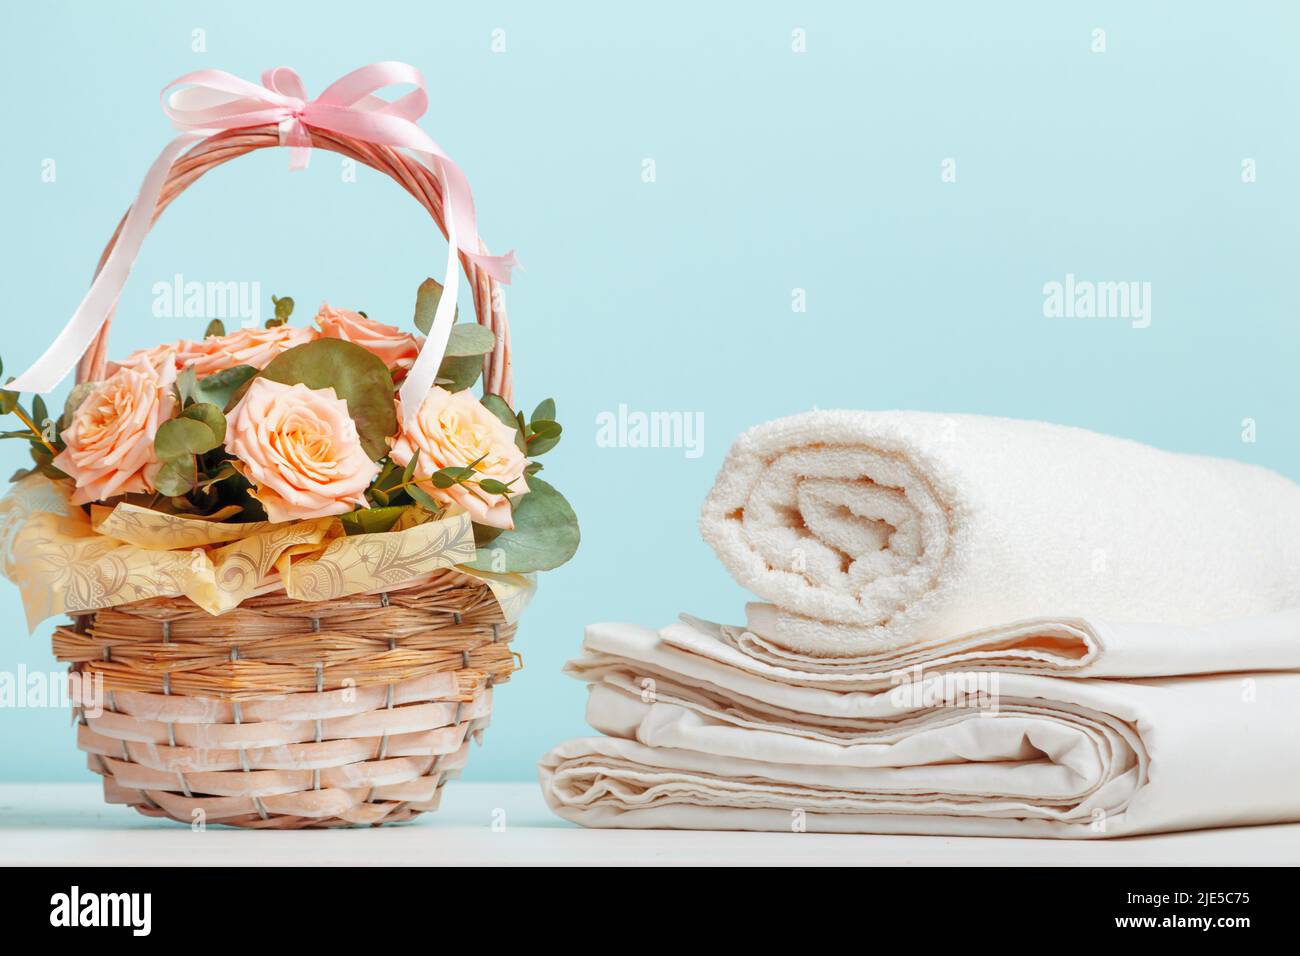 Lenzuola bianche, asciugamani in rotolo cesto con fiori sul tavolo su sfondo blu. Foto Stock